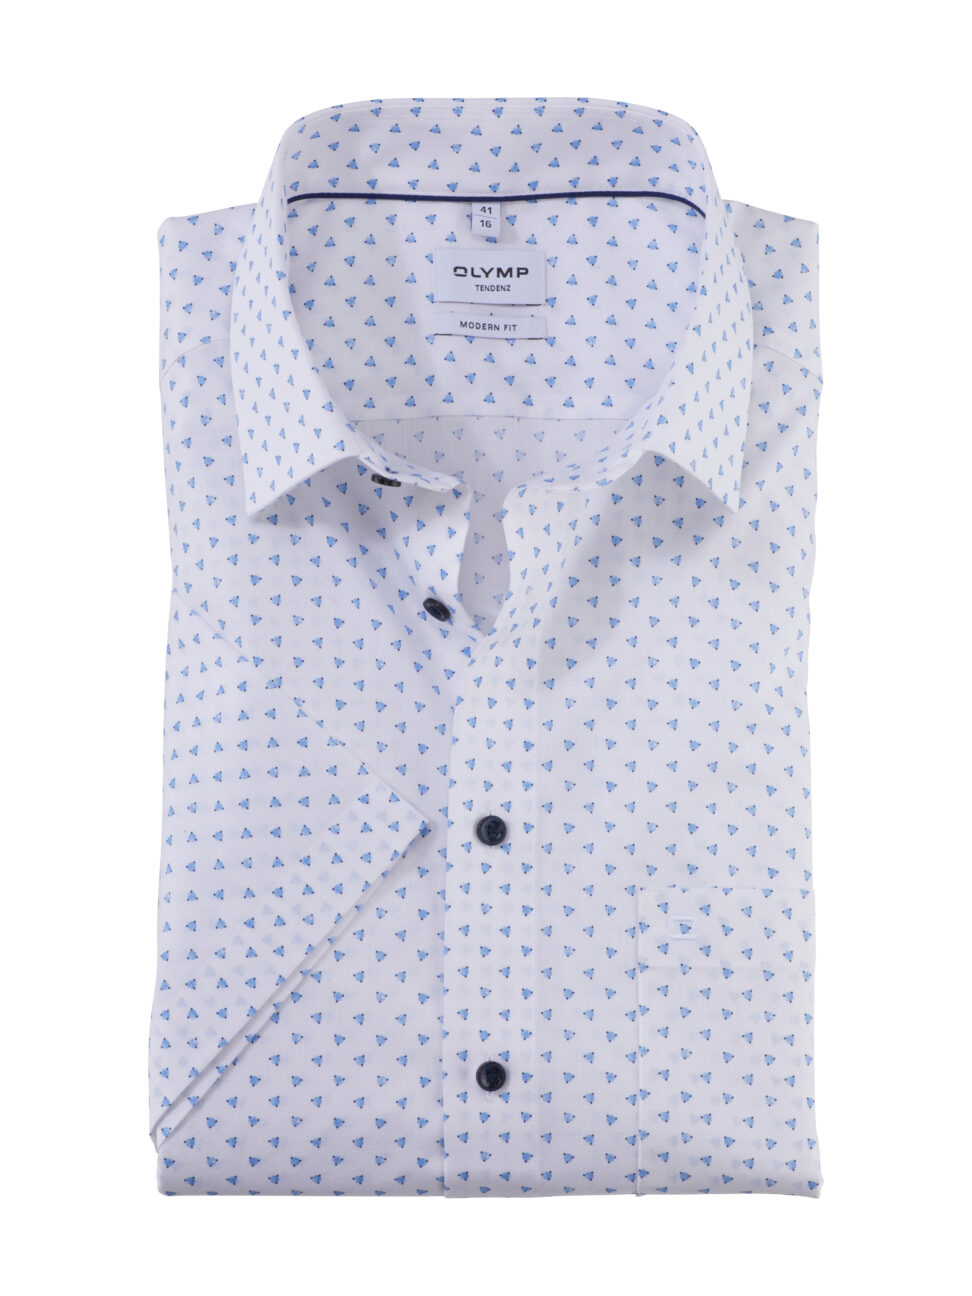 Koszula OLYMP Tendenz, modern fit, Biała w niebieskie wzorki / New Kent / 86363211 krótki rękaw